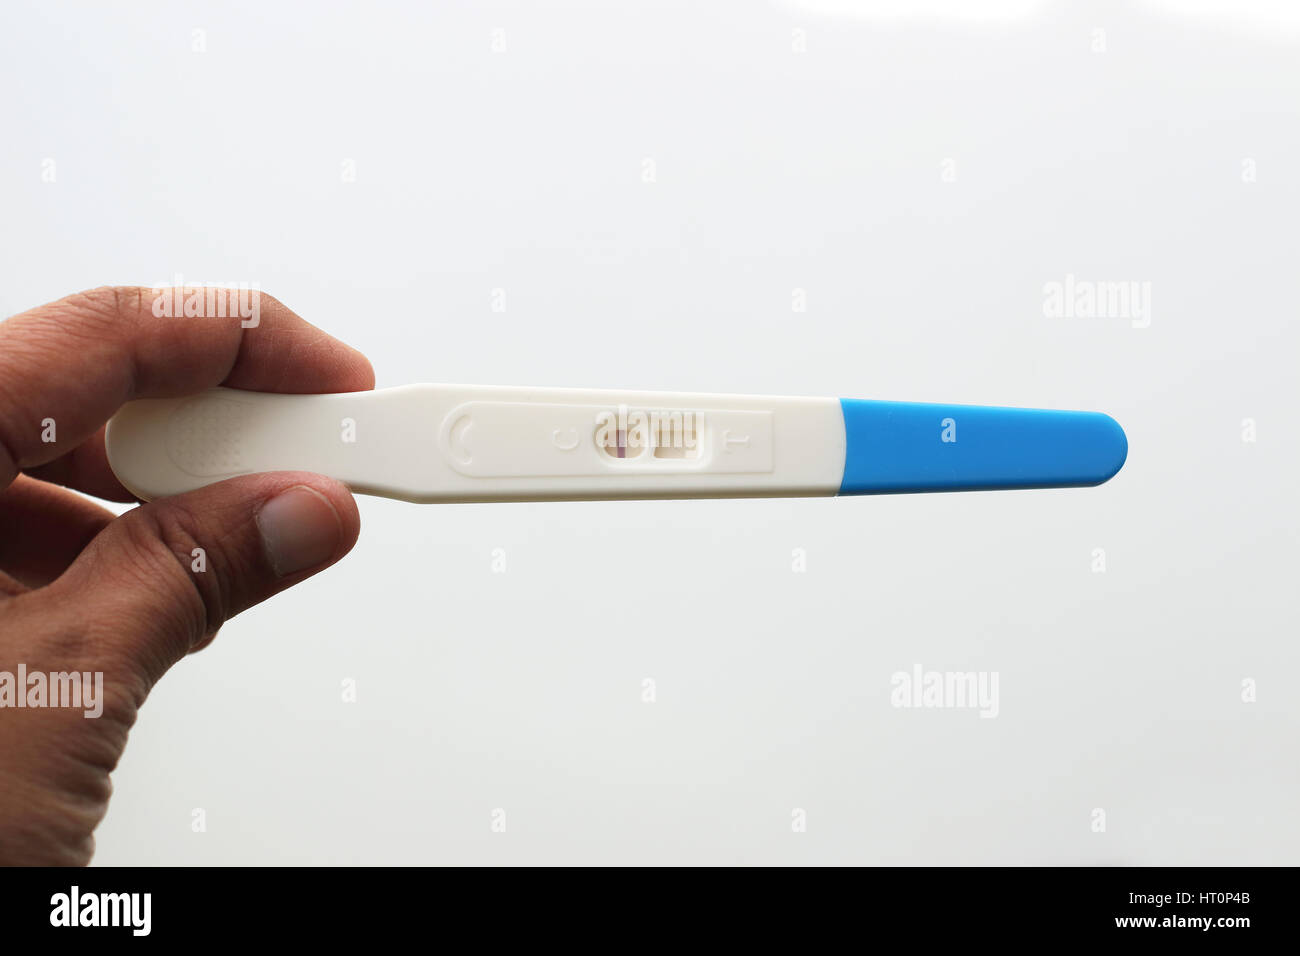 Hand holding Test de grossesse contre isolé sur fond blanc Banque D'Images